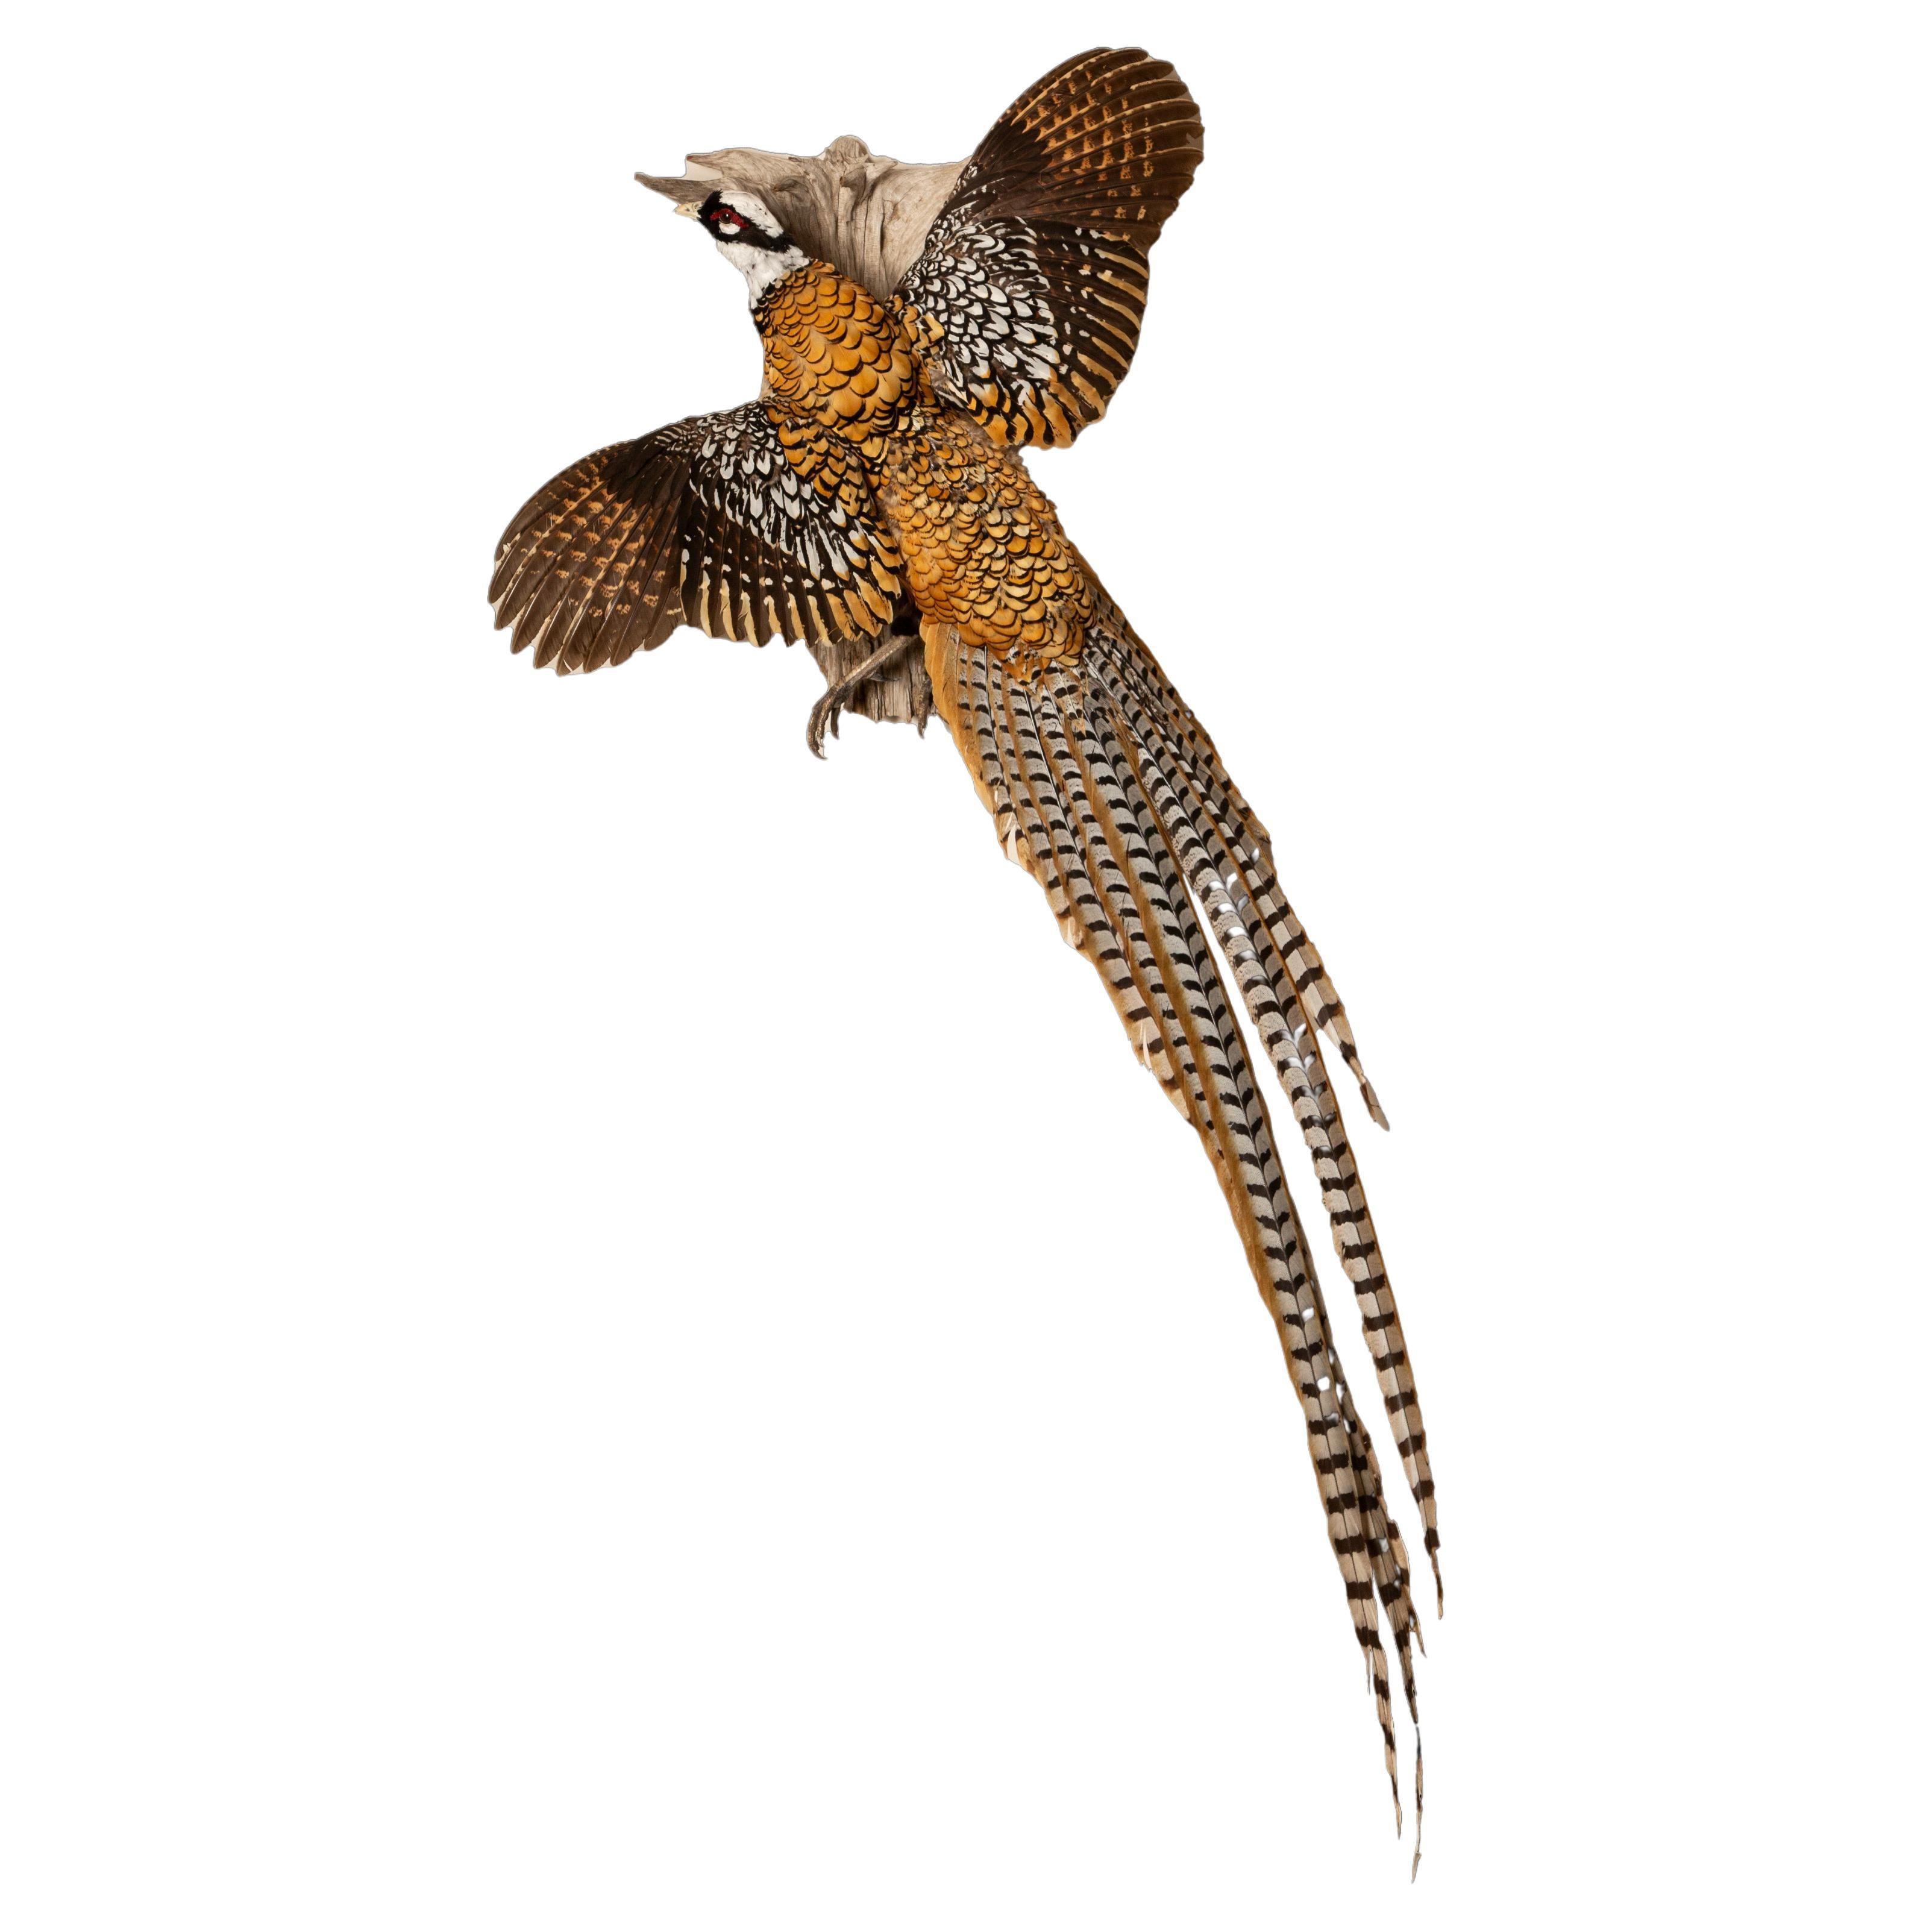 Elegance royale : The Reeves's Pheasant - Un chef-d'œuvre de taxidermie volante